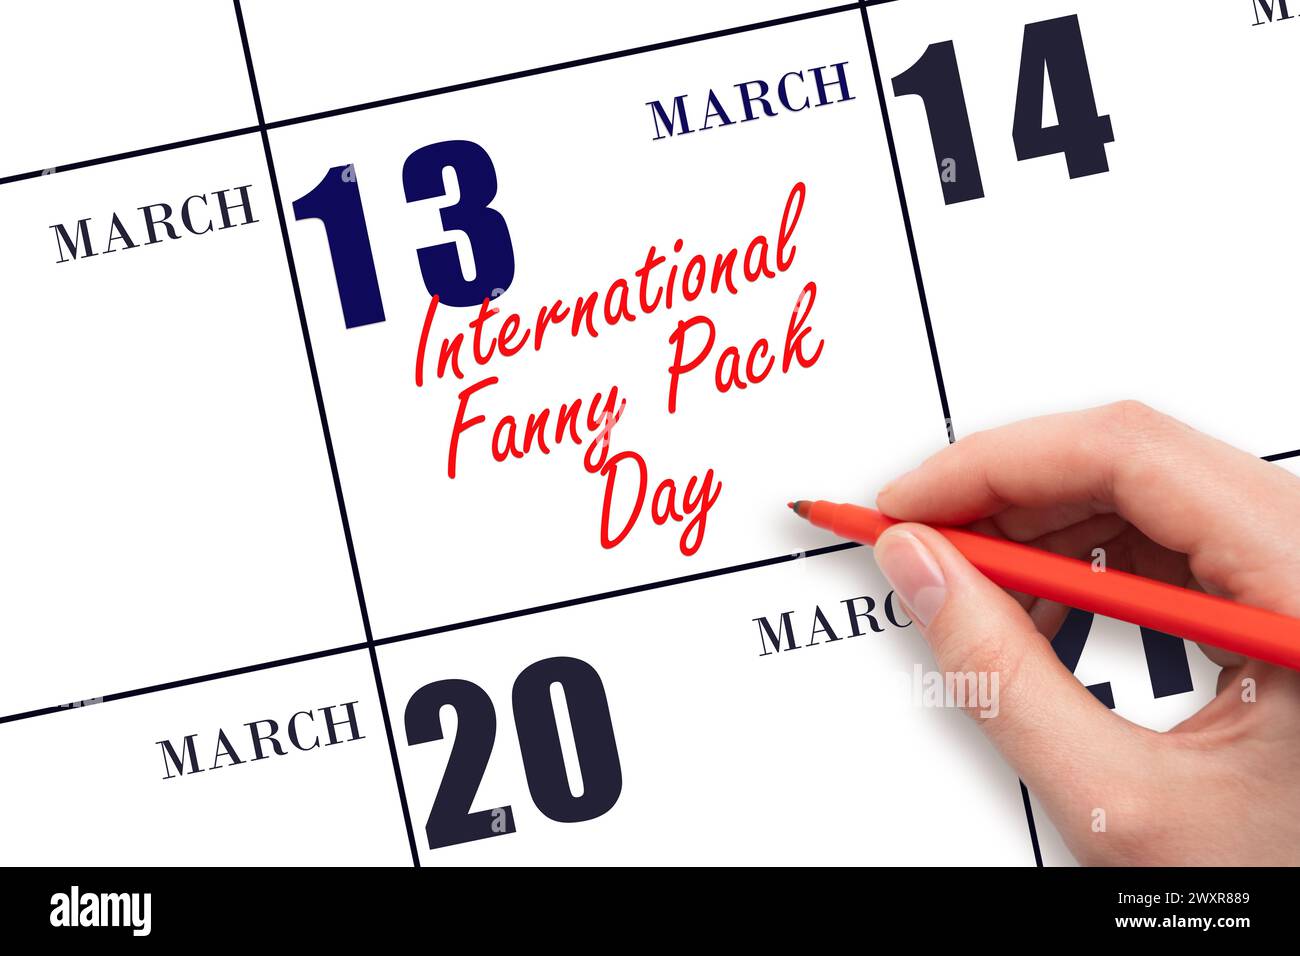 März. Handschrift International Fanny Pack Day am Kalenderdatum. Speichern Sie das Datum. Urlaub. Tag des Jahres-Konzept. Stockfoto